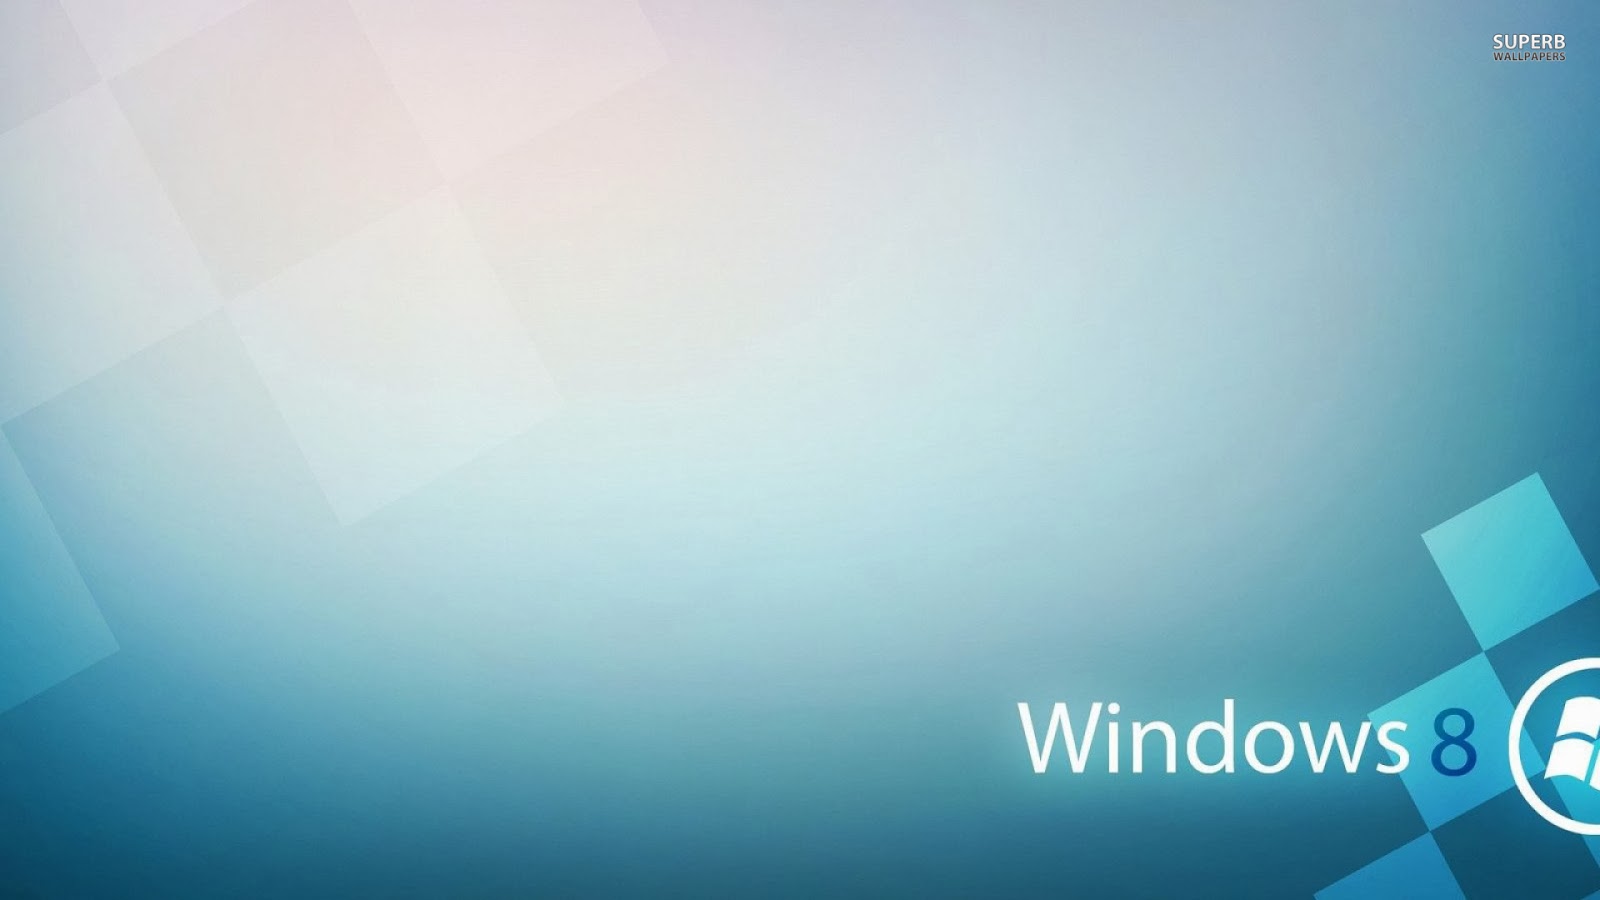 fond d'écran pour ordinateur portable windows 8,bleu,aqua,turquoise,ciel,jour